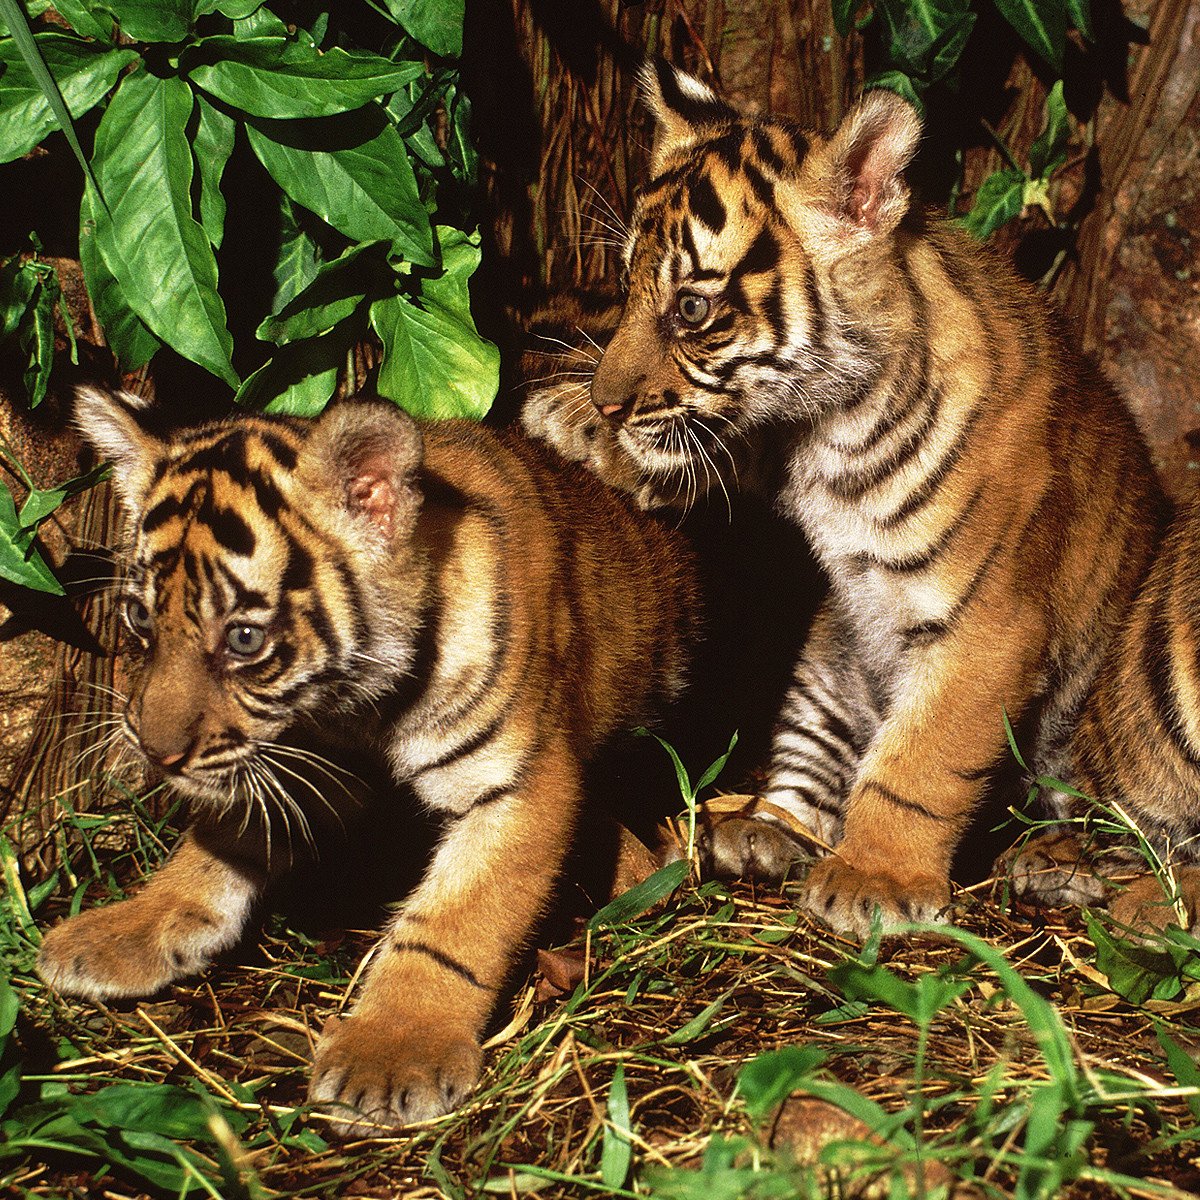 rétablissons les populations de tigre - WWF-Canada